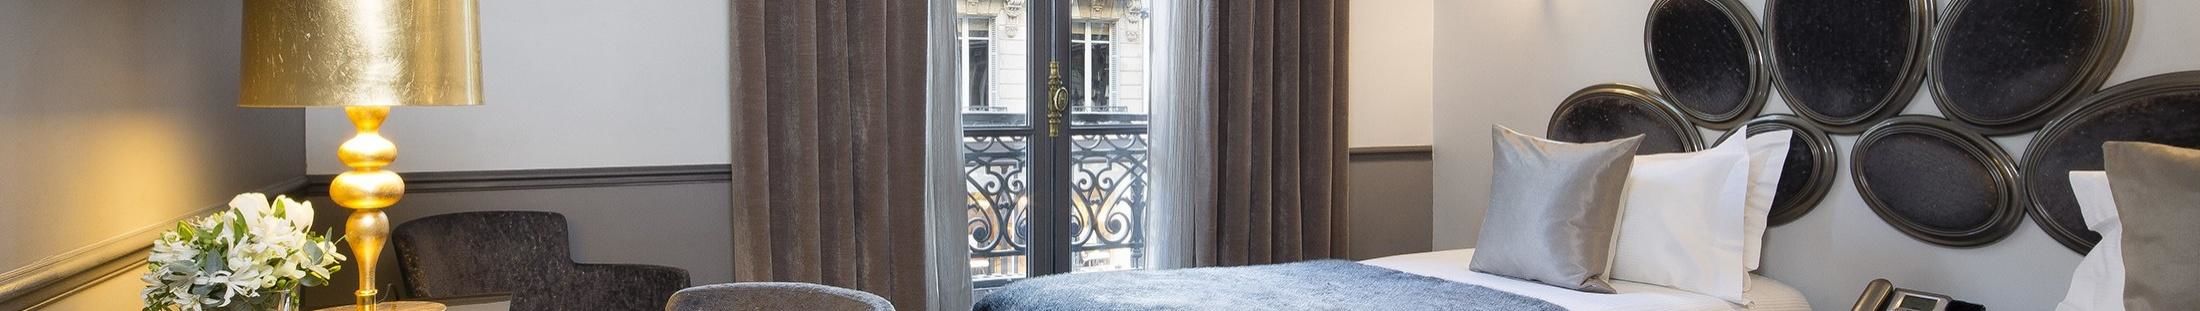 Hotel Lumen Paris Louvre - Camera